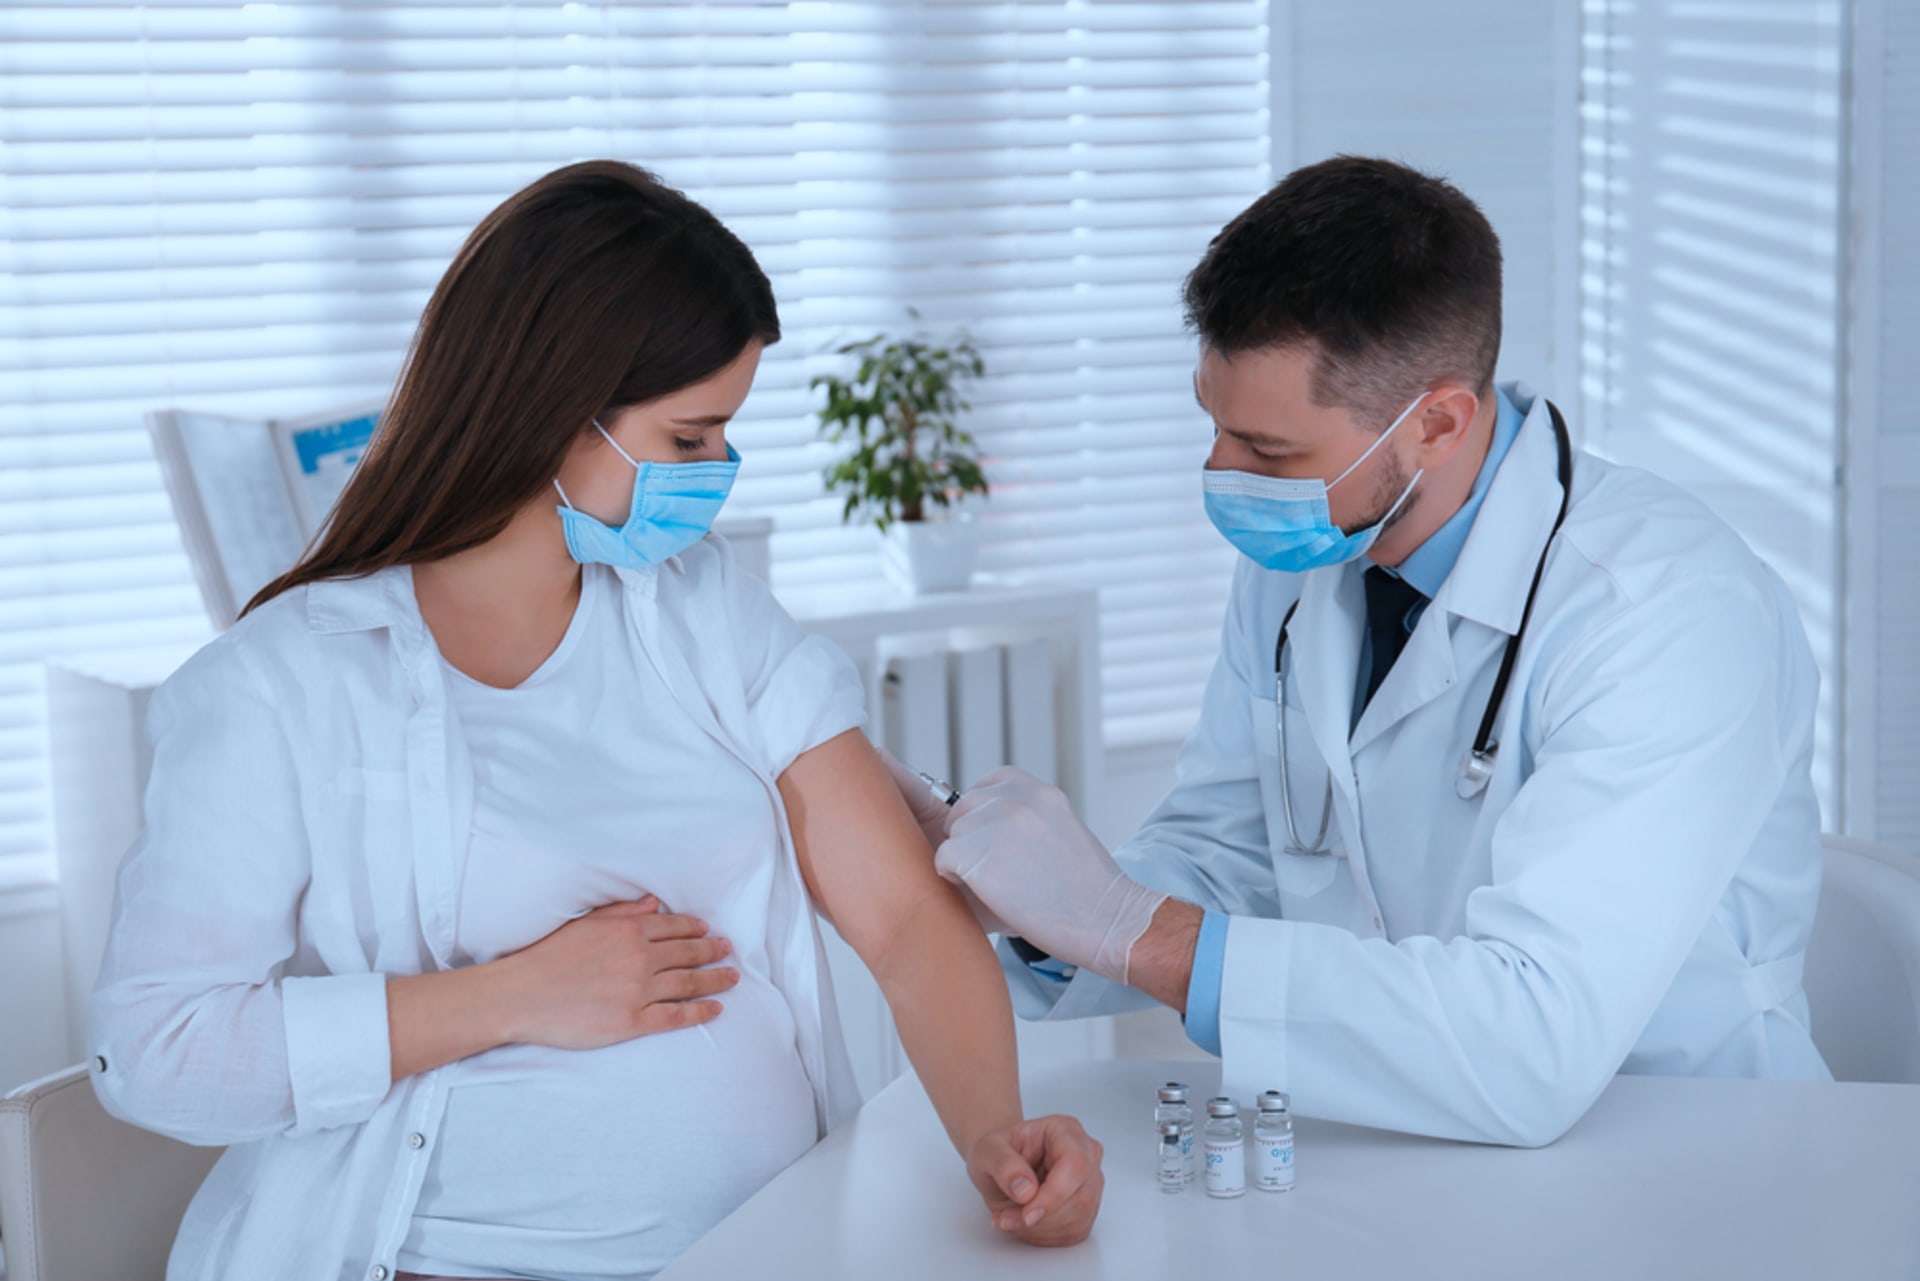 Odborníci očkování v těhotenství doporučují, ideálně ve druhém trimestru. 